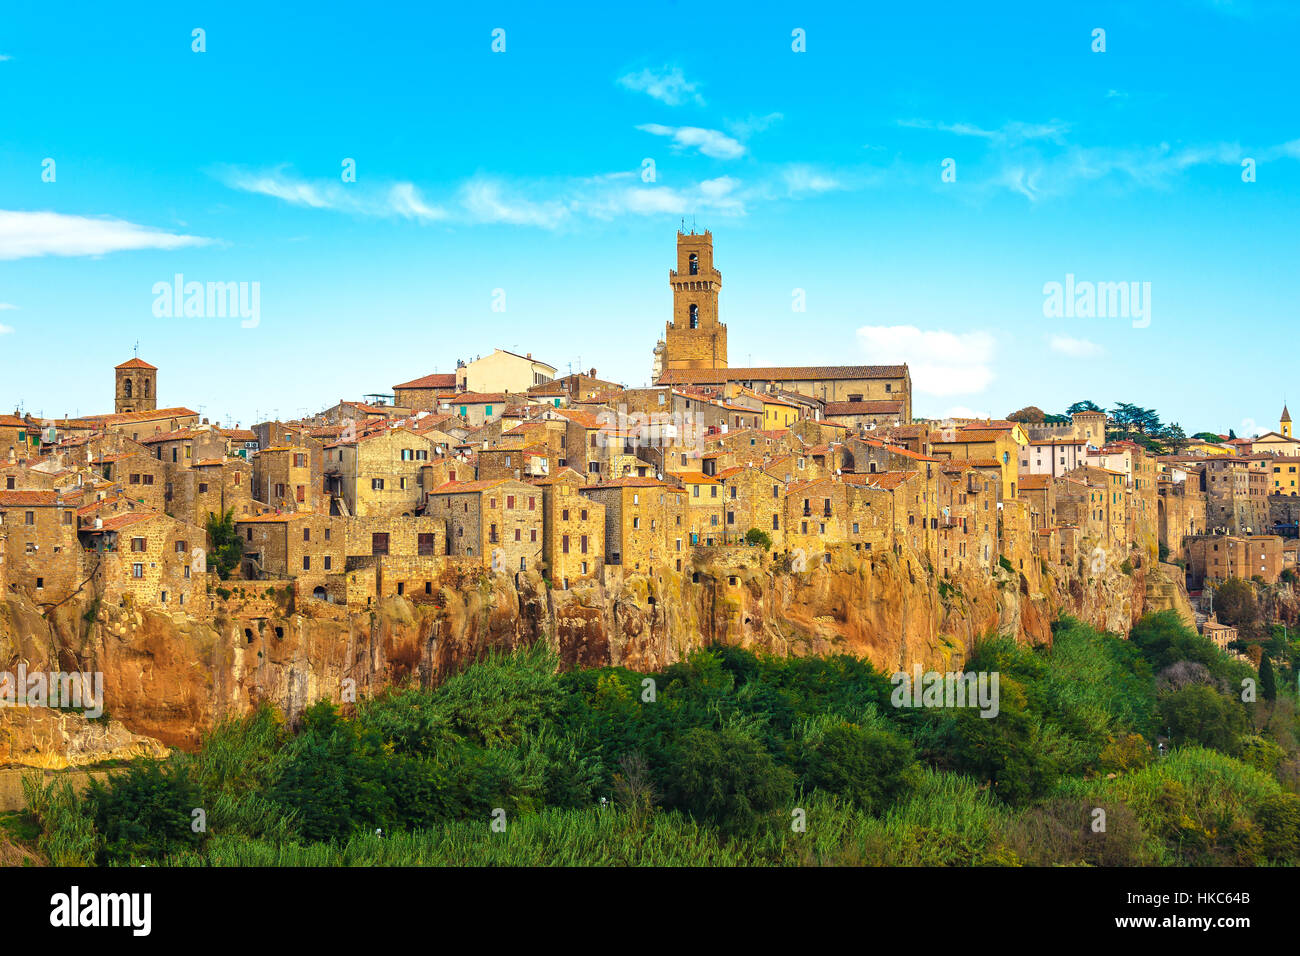 Toscana, Pitigliano borgo medievale sul tufo rocky hill. Panorama del paesaggio. L'Italia, l'Europa. Foto Stock